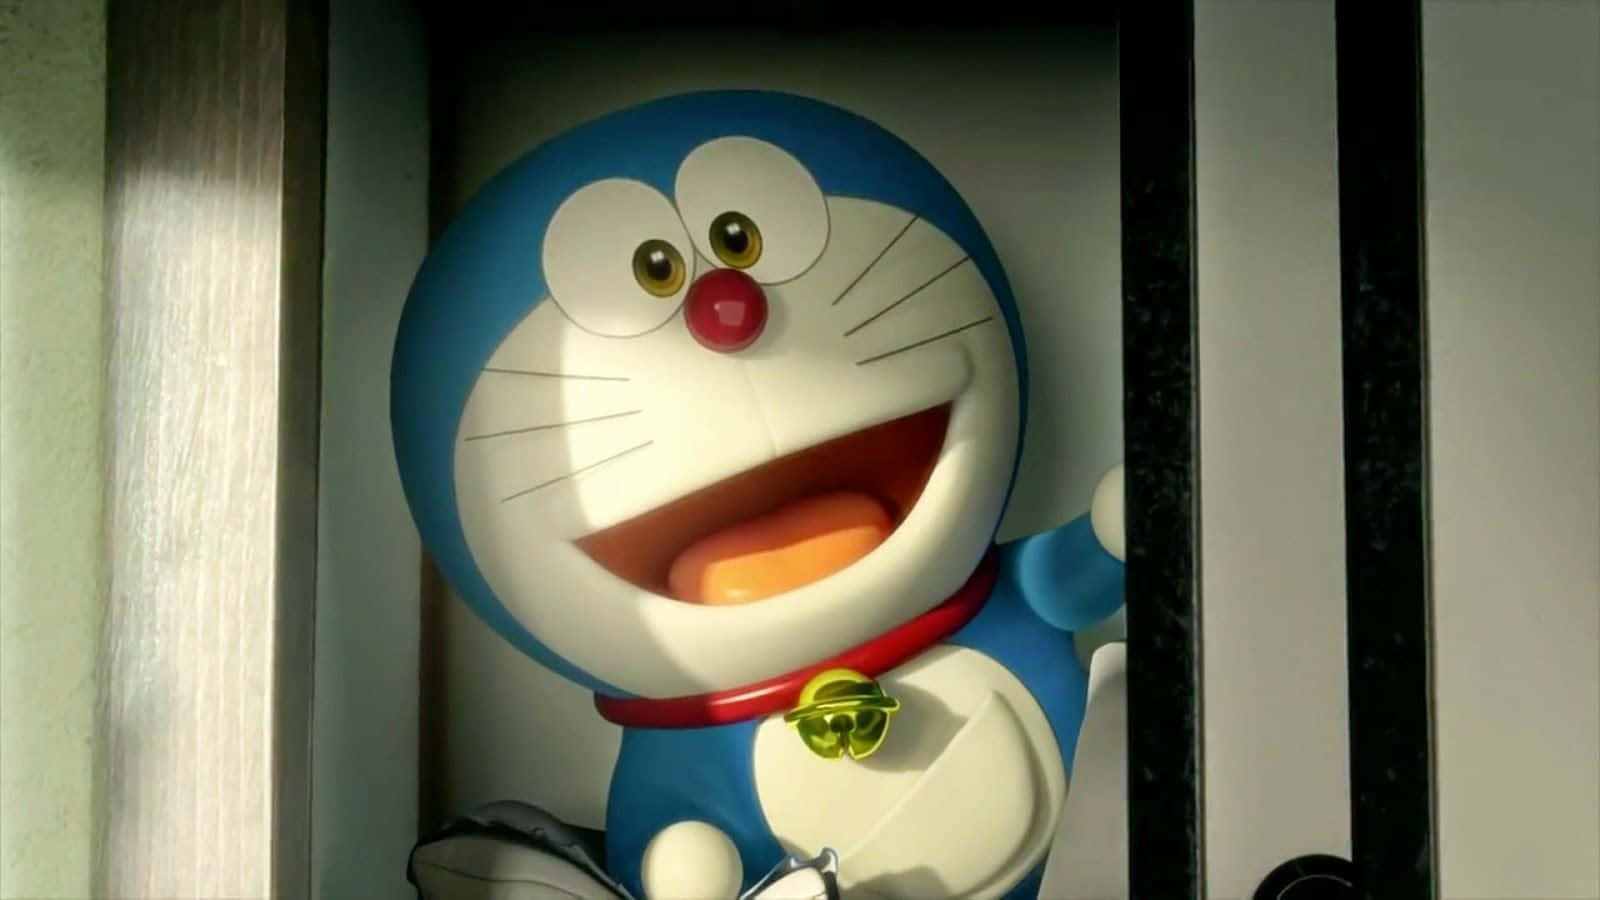 Doraemonklar Att Uppfylla Dina Önskningar